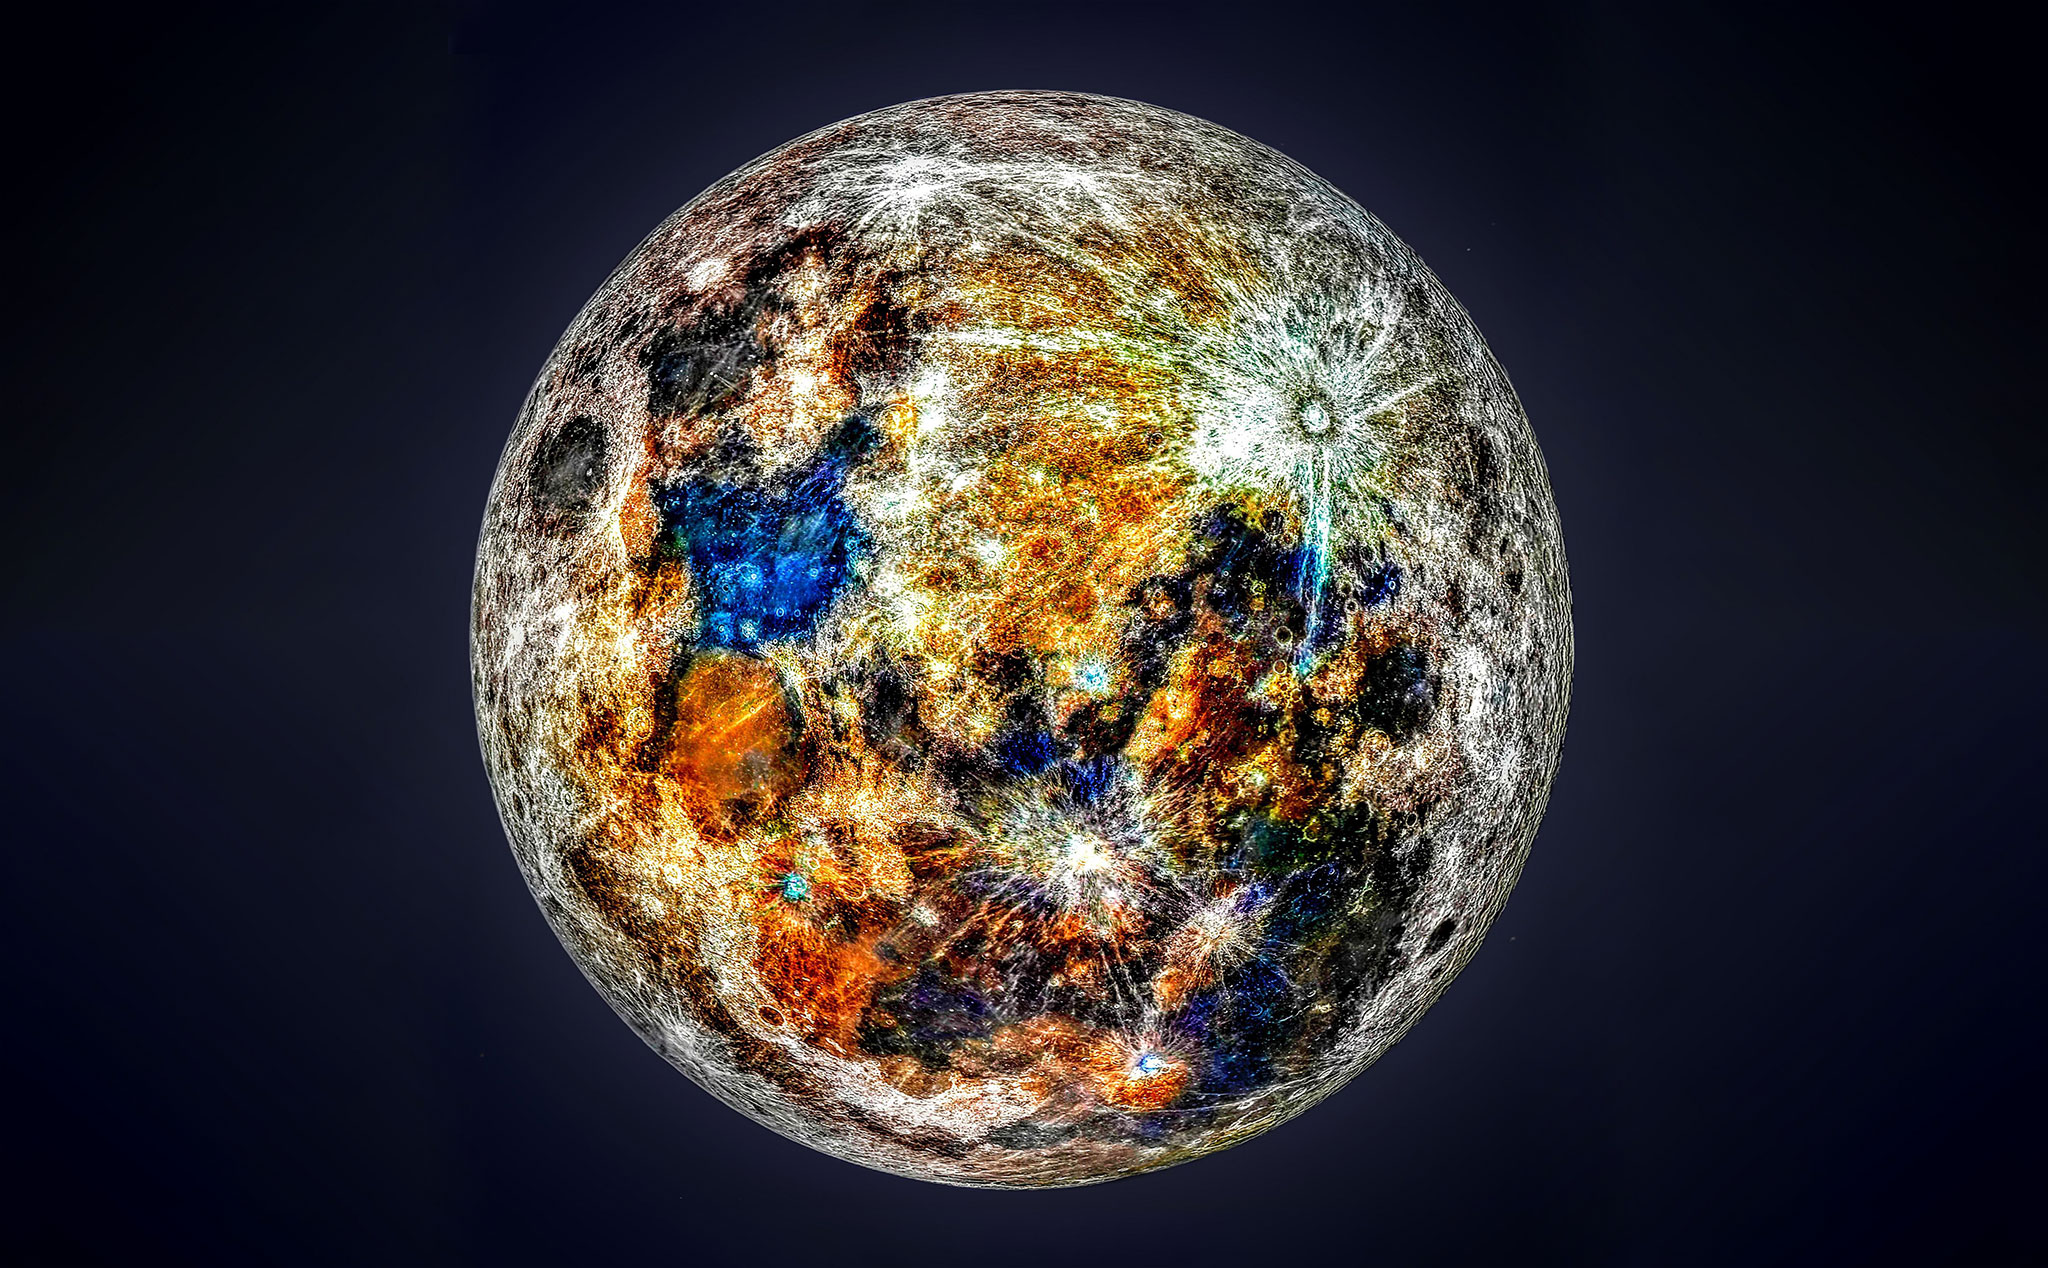 Đây là hình ảnh chi tiết bề mặt của mặt trăng sau khi được ghép bởi hơn 150.000 ảnh chụp từ trái đất